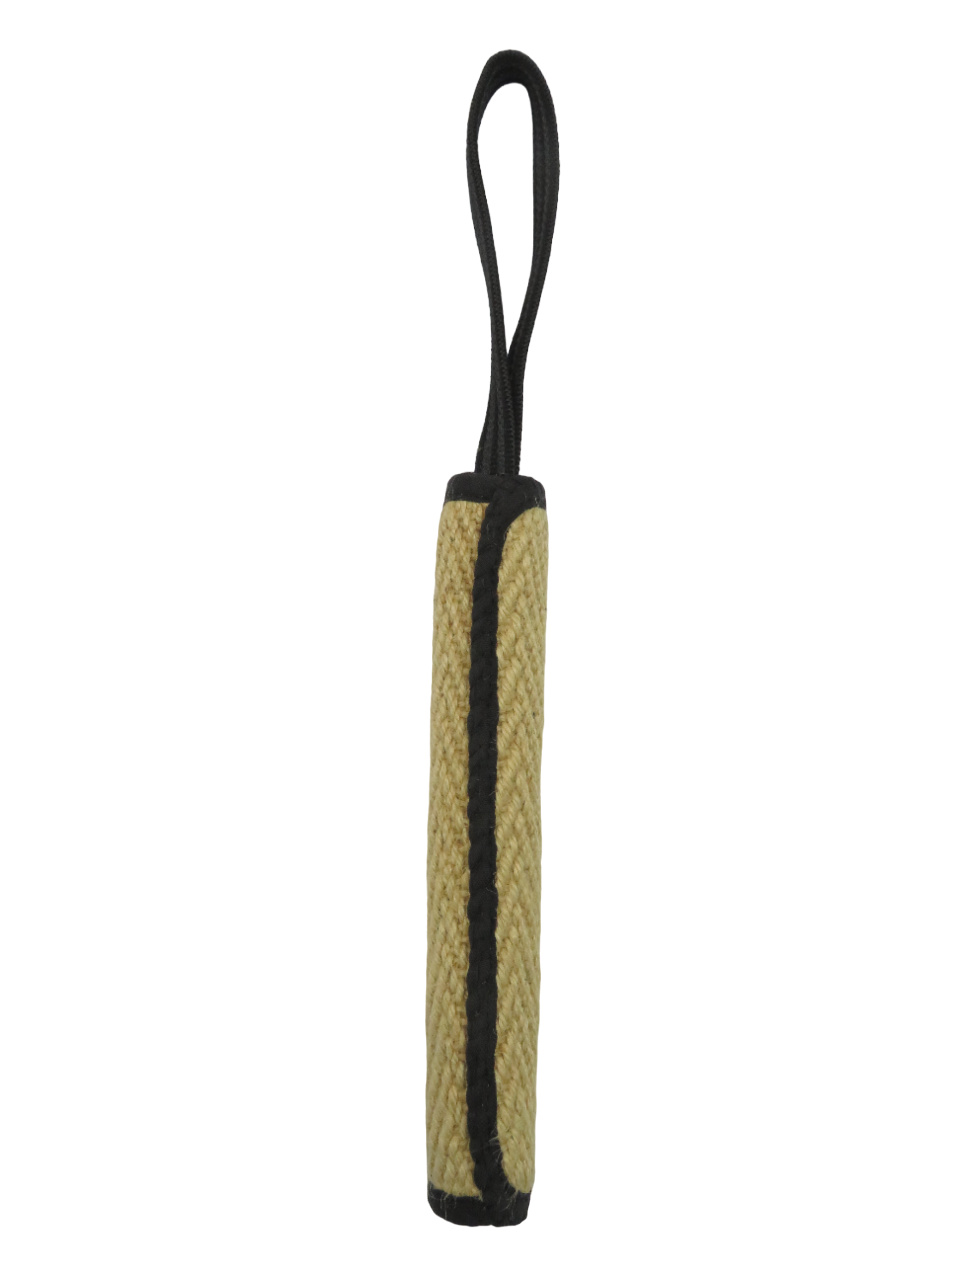 BOW WOW BOW WOW джутовая палка с 9-миллиметровой прорезиненной ручкой (натуральная) (120 г) bow wow bow wow джутовая палка с 9 миллиметровой прорезиненной ручкой натуральная 120 г